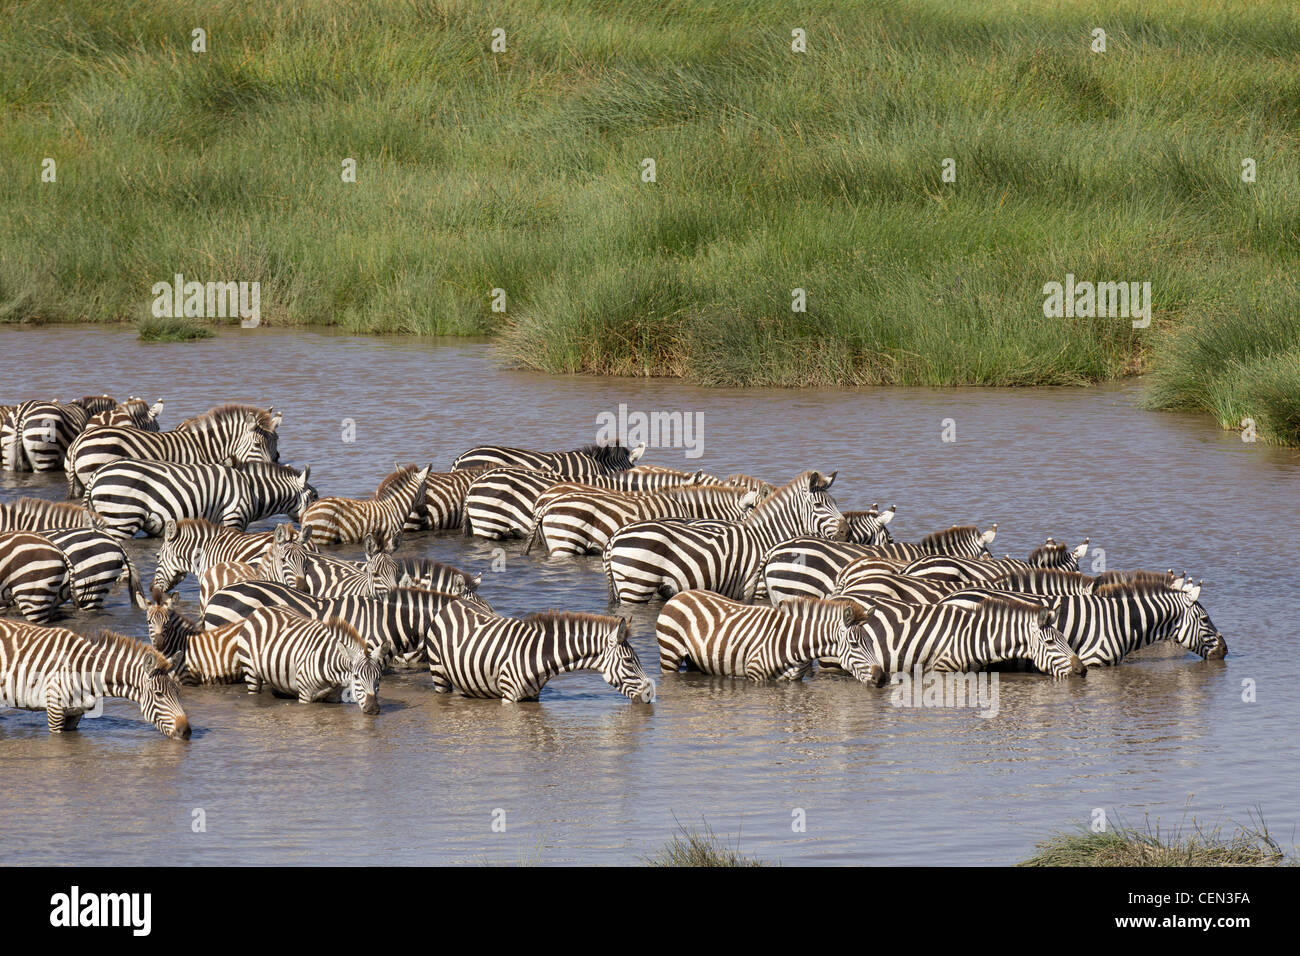 Zebra herd drinking in Tanzania's Serengeti region Stock Photo